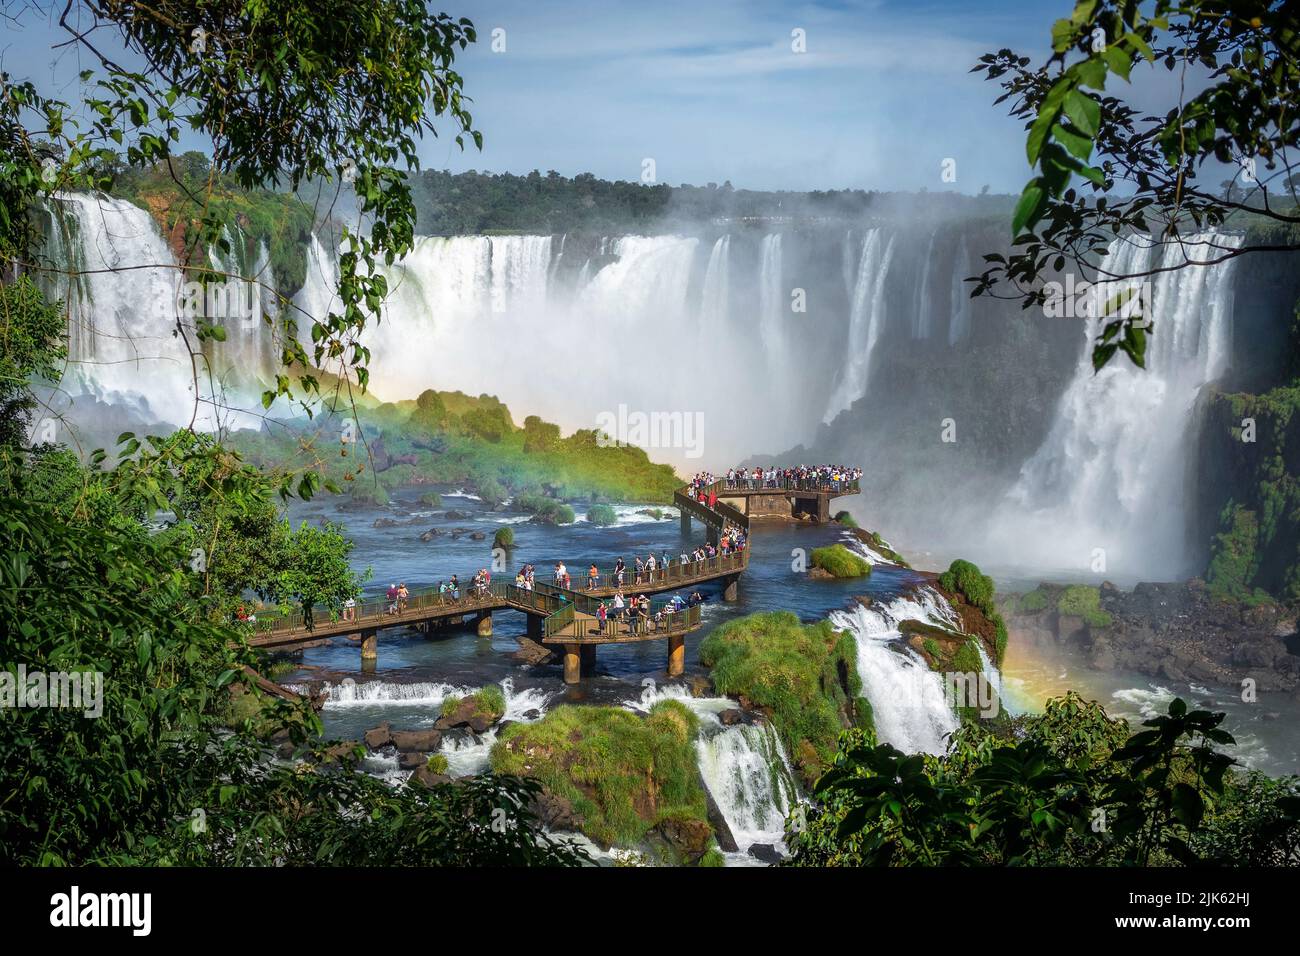 Turistas explorando las Cataratas del Iguazú en la frontera entre Brasil y Argentina. Foto de stock